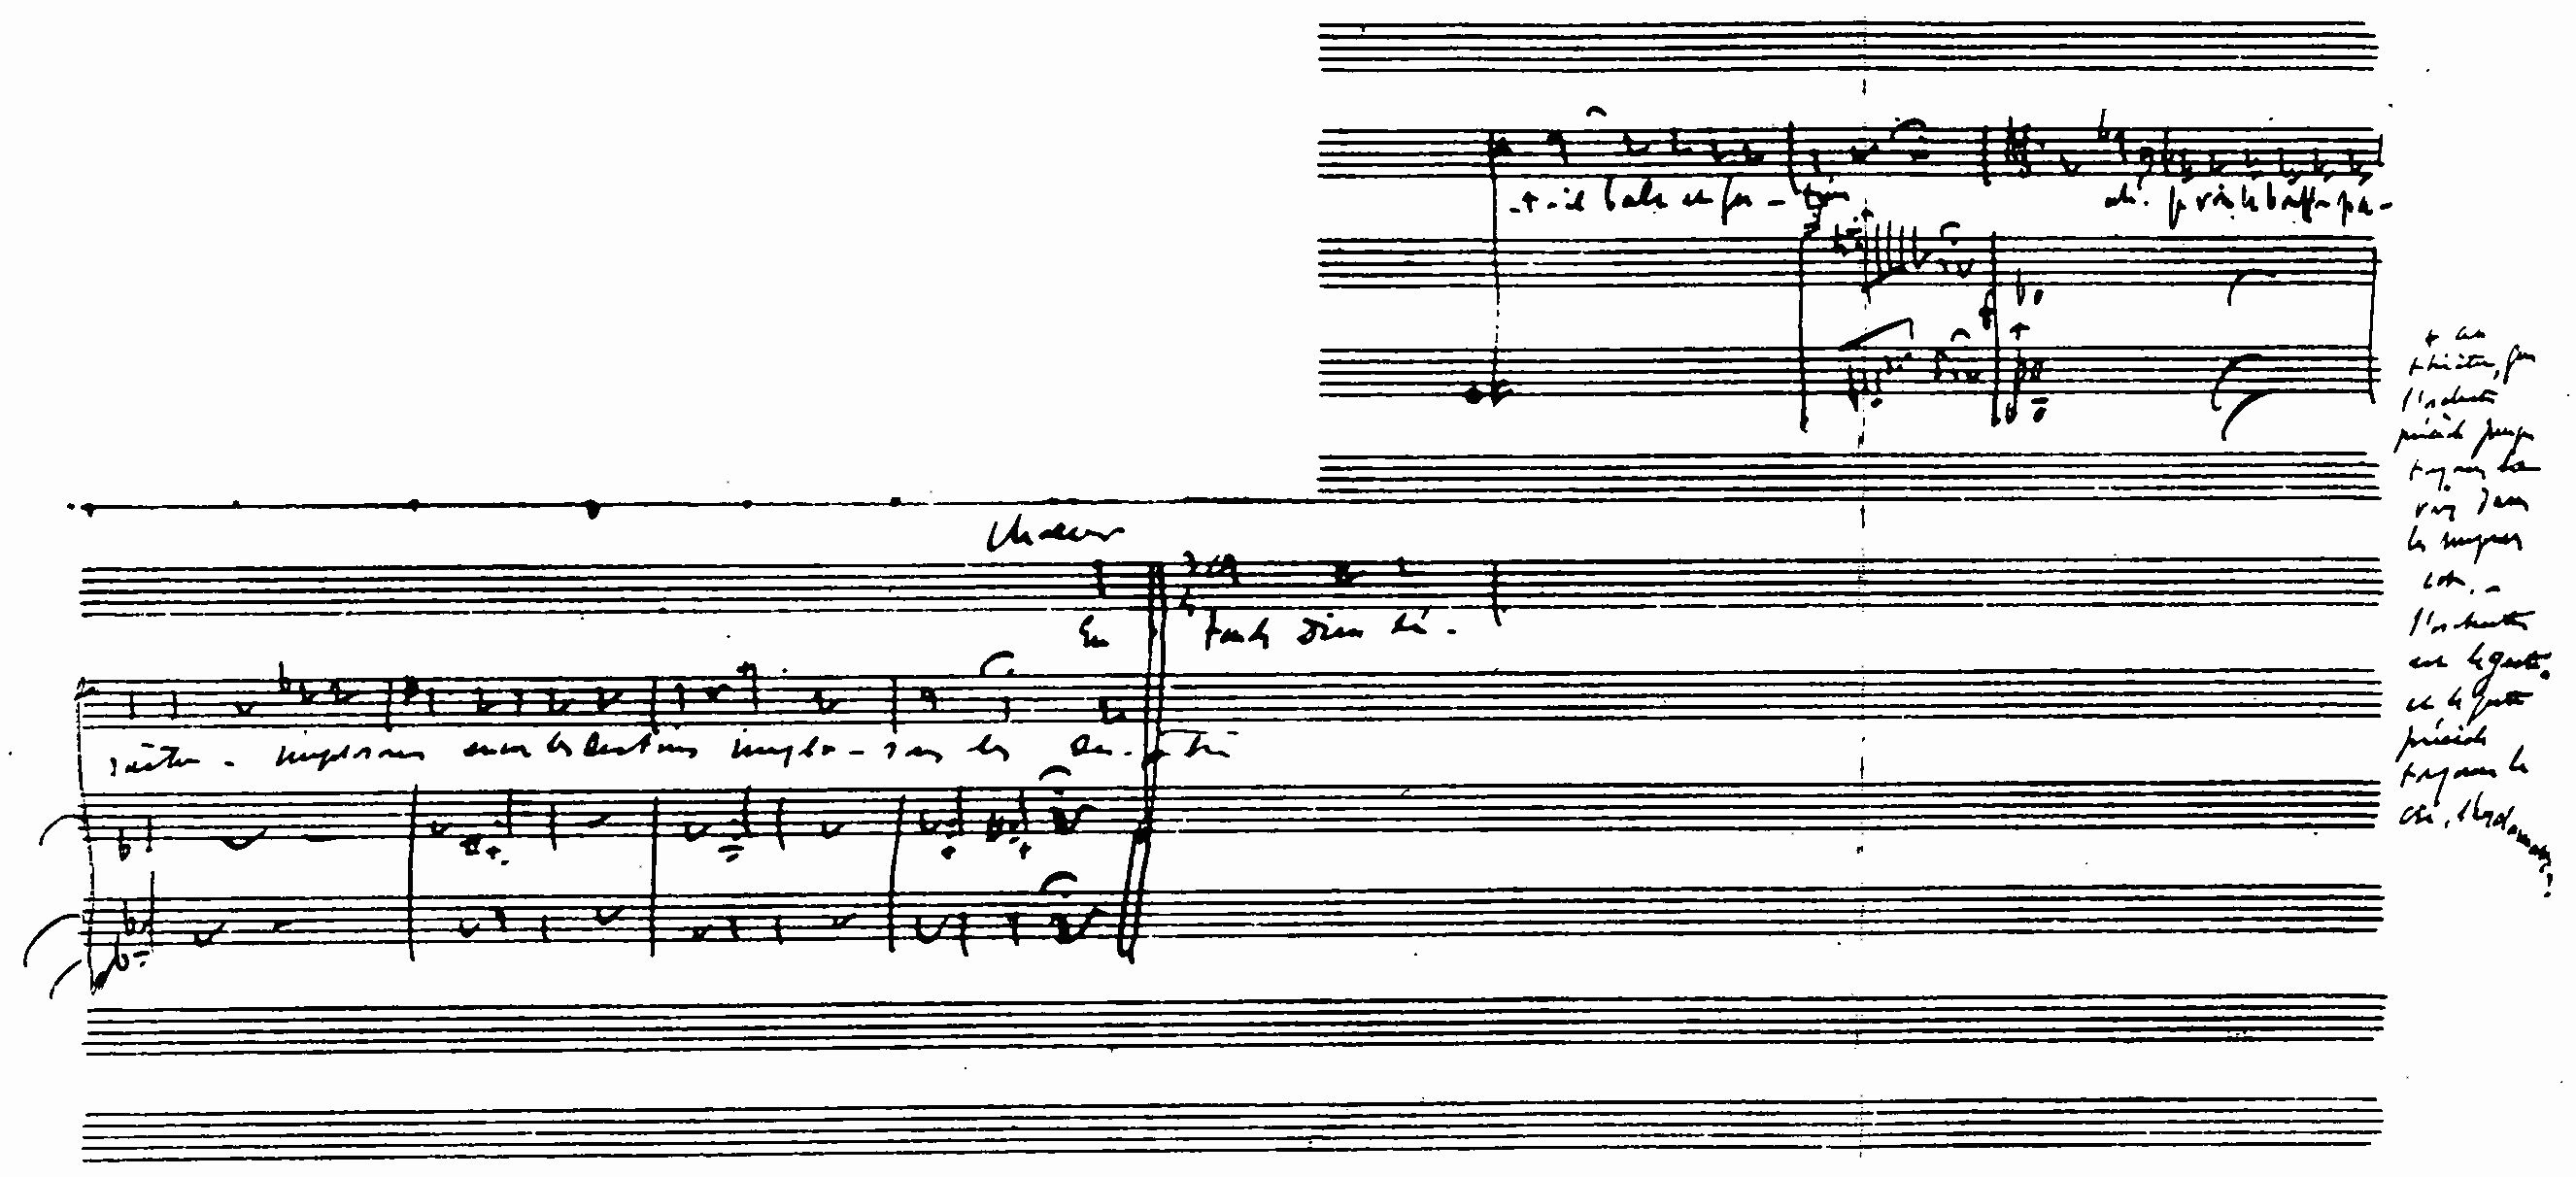 Porte-partitions Cantate modèle Scherzo - Cahiers de musique chant